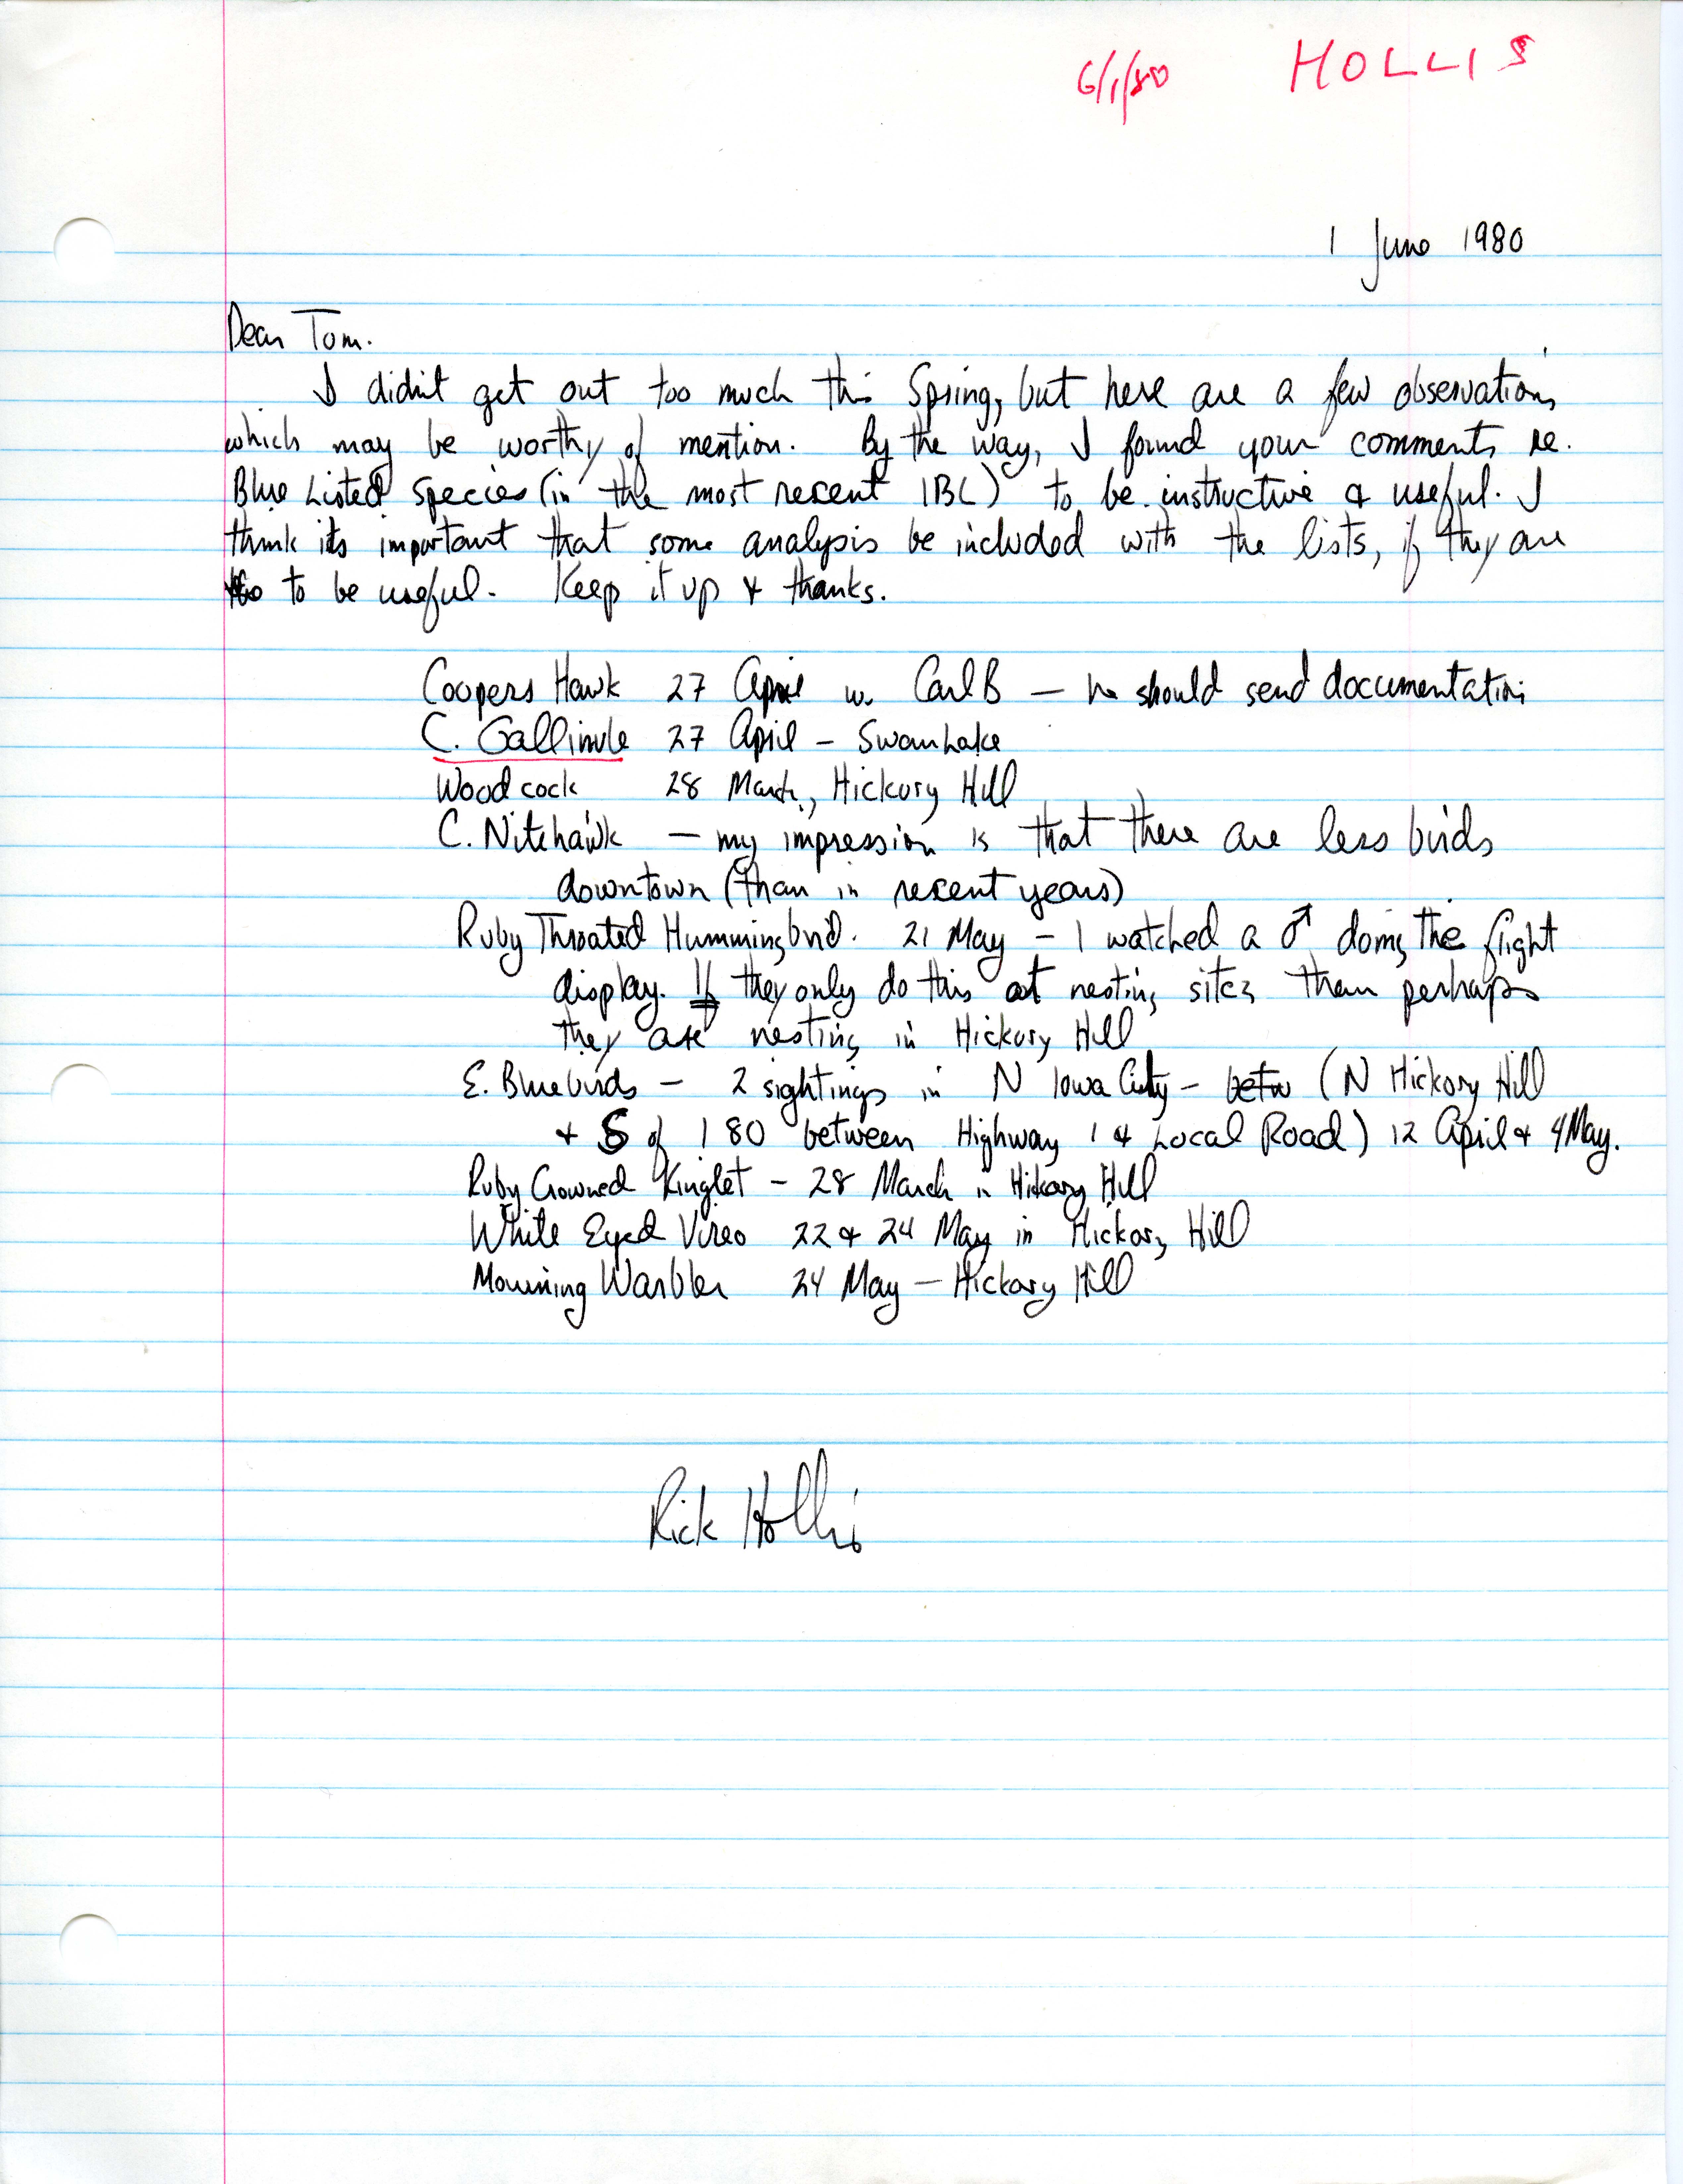 Richard Jule Hollis letter to Thomas H. Kent regarding bird sightings, June 1, 1980